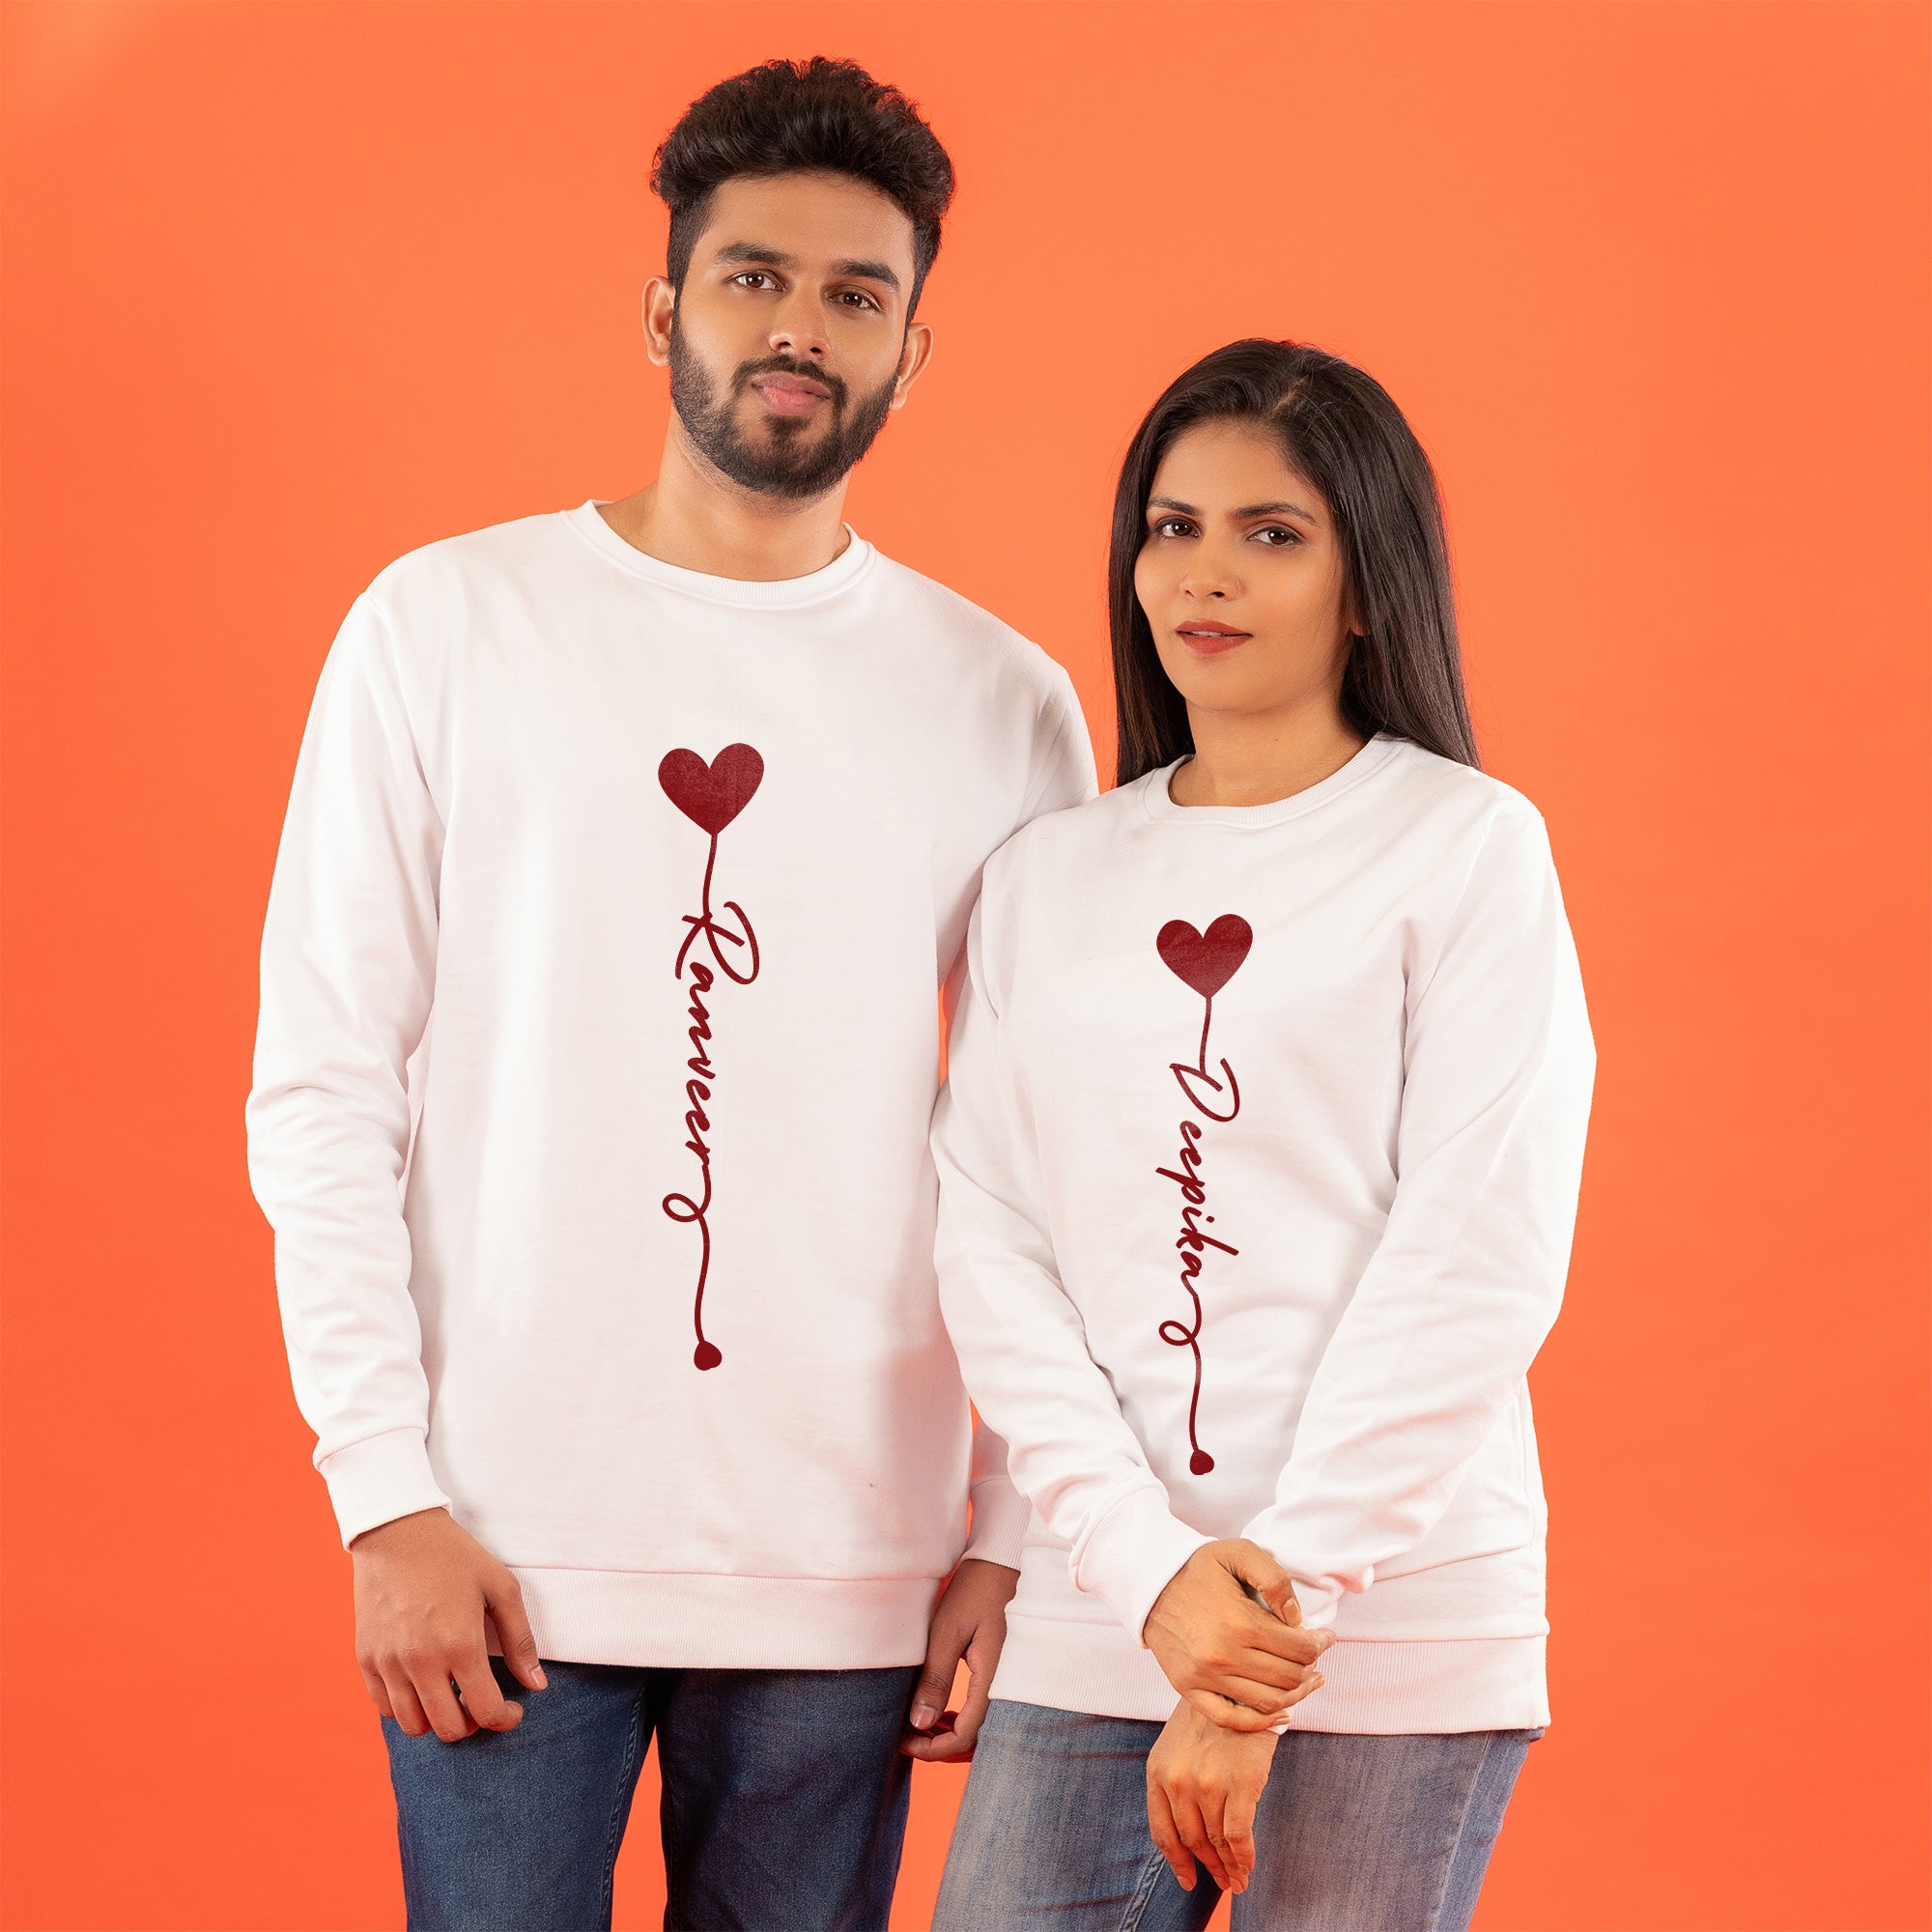 Baloon-Thread-Name-Personalised-White-Couple-Sweatshirt-s-Gogirgit-Anniversary-Gift-Travel-Love-Custom